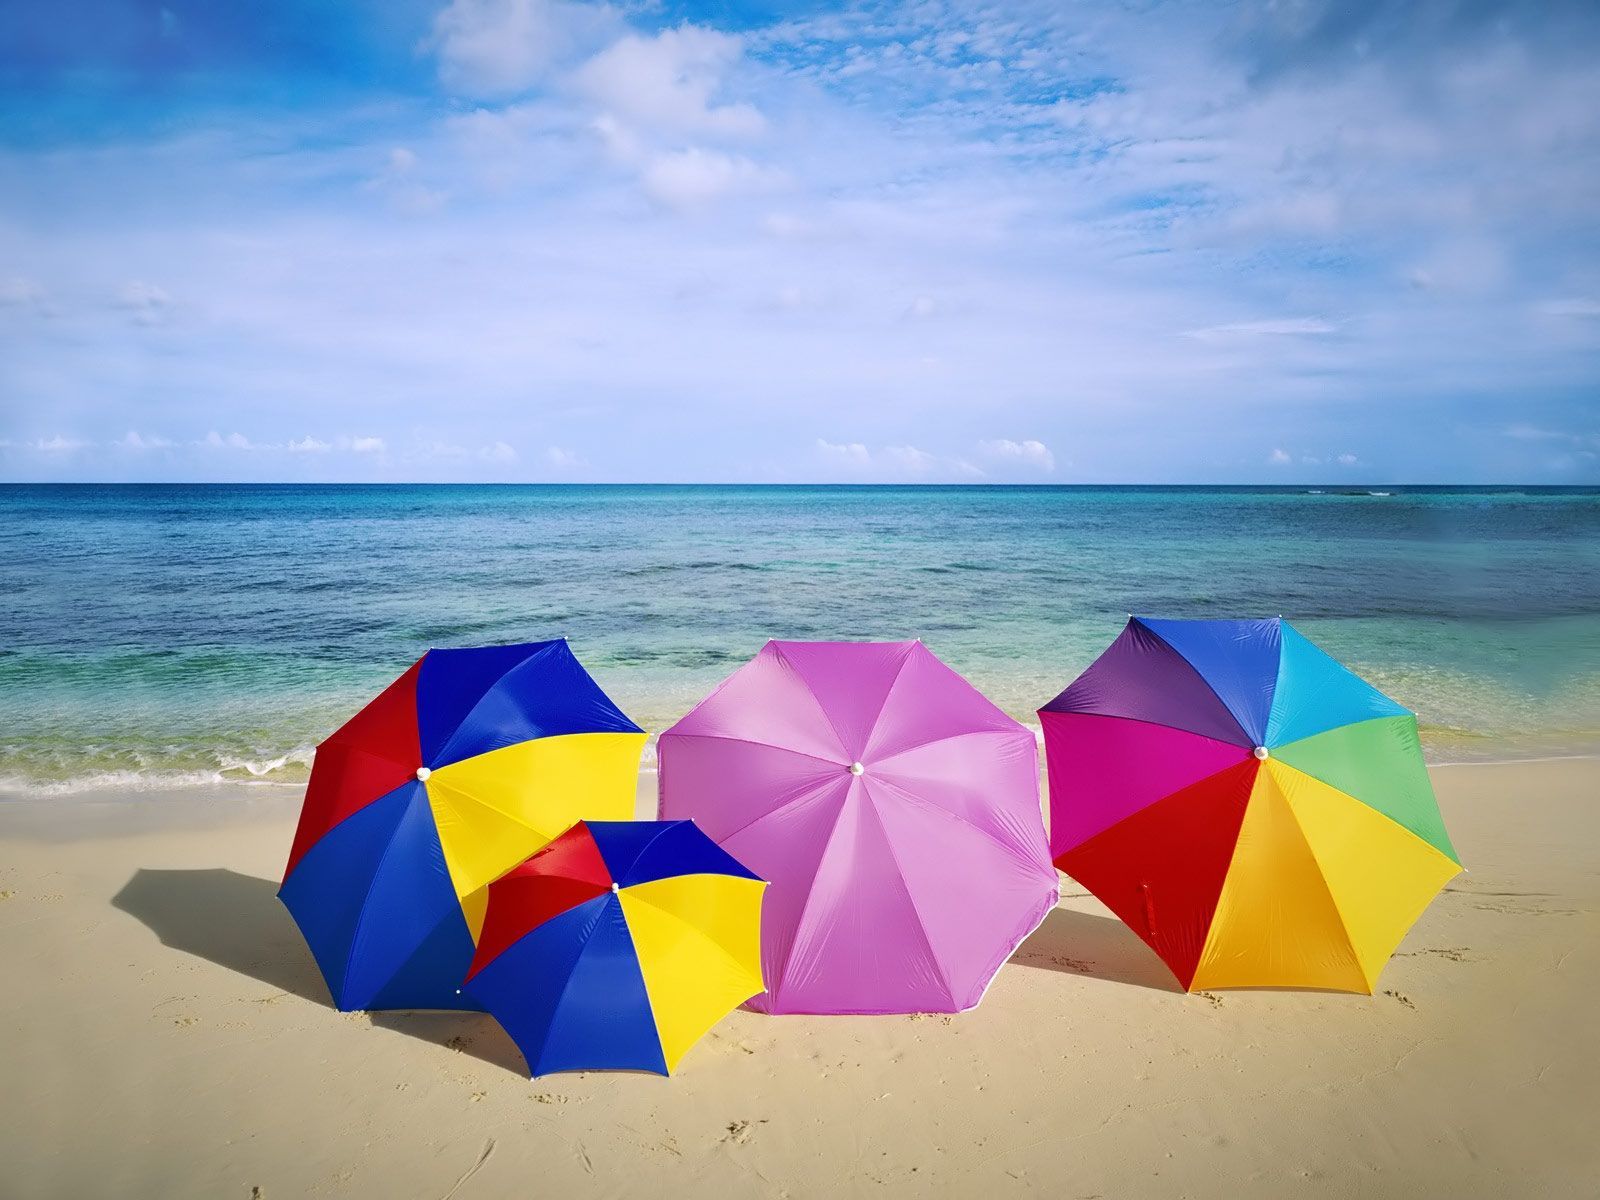 water. Summer landscape, Beach umbrella, Beach